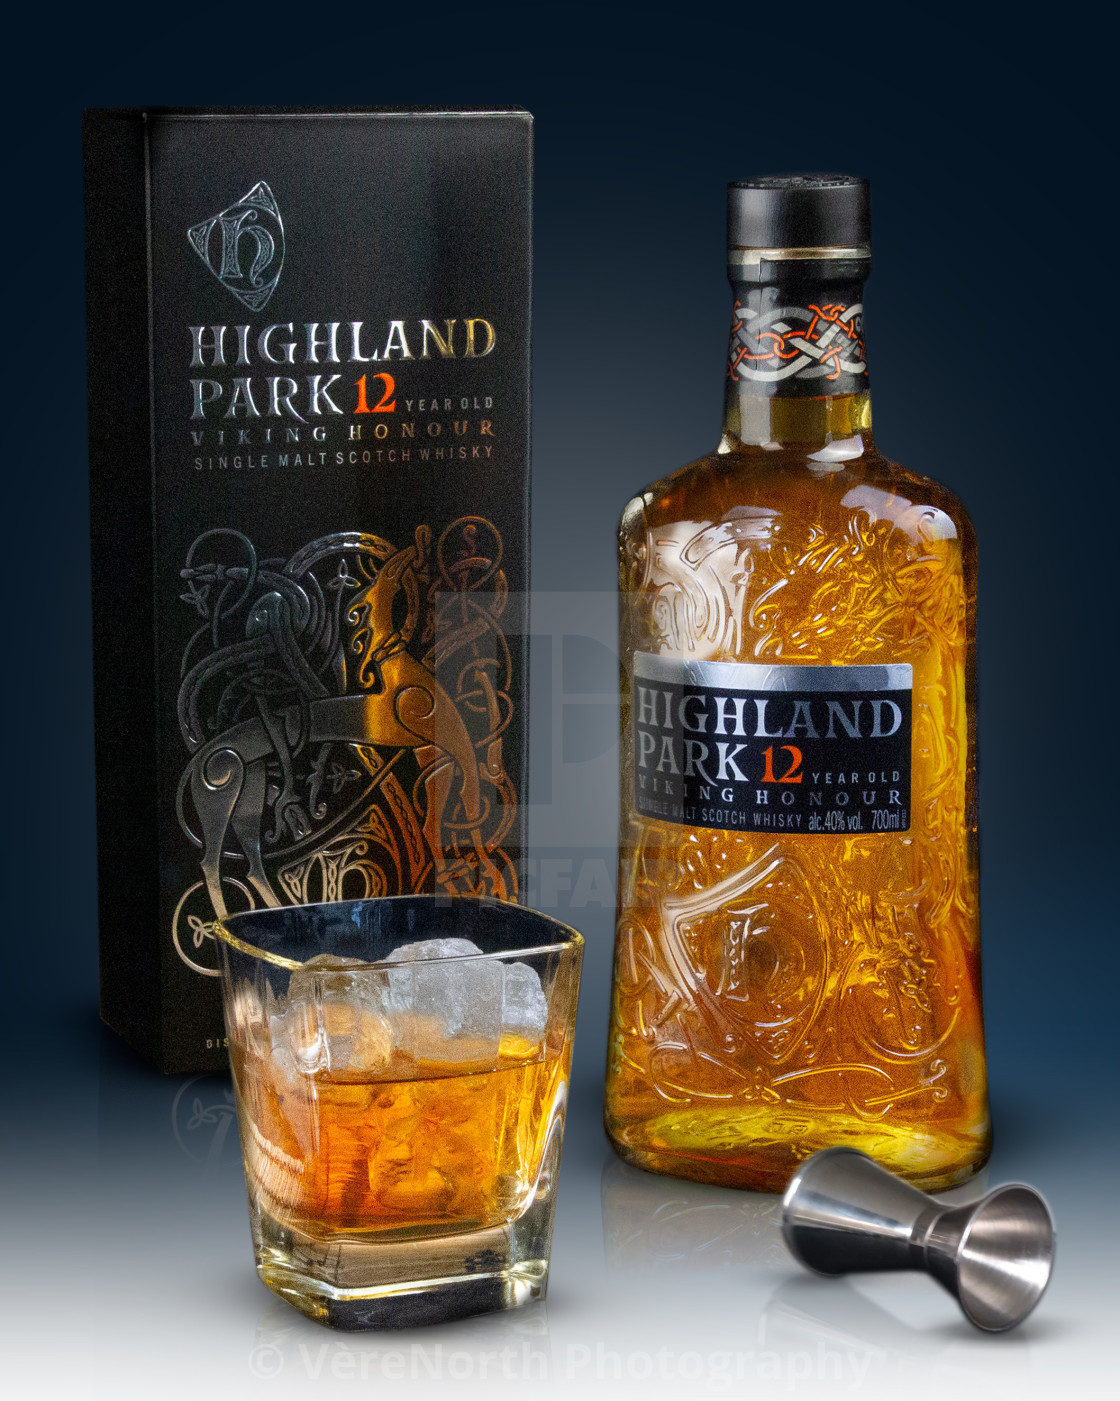 "Highland Park 12 year old whisky" stock image